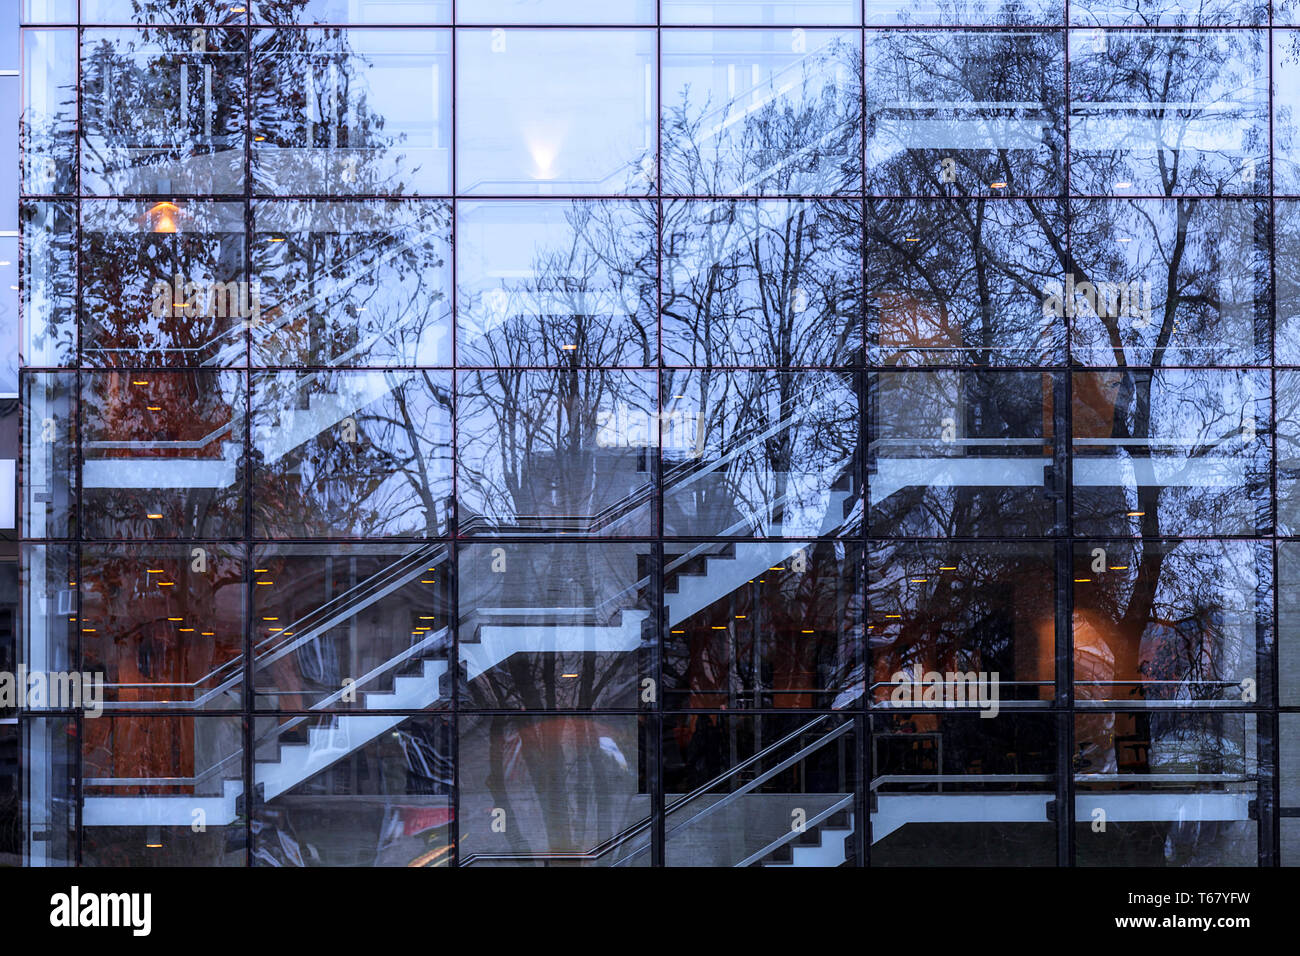 La arquitectura moderna de vidrio faÃ§ade con escaleras interiores  construcción y reflejo de los árboles en el parque. Naturaleza vs urbano.  Belgrado, Serbia. Resumen imag Fotografía de stock - Alamy